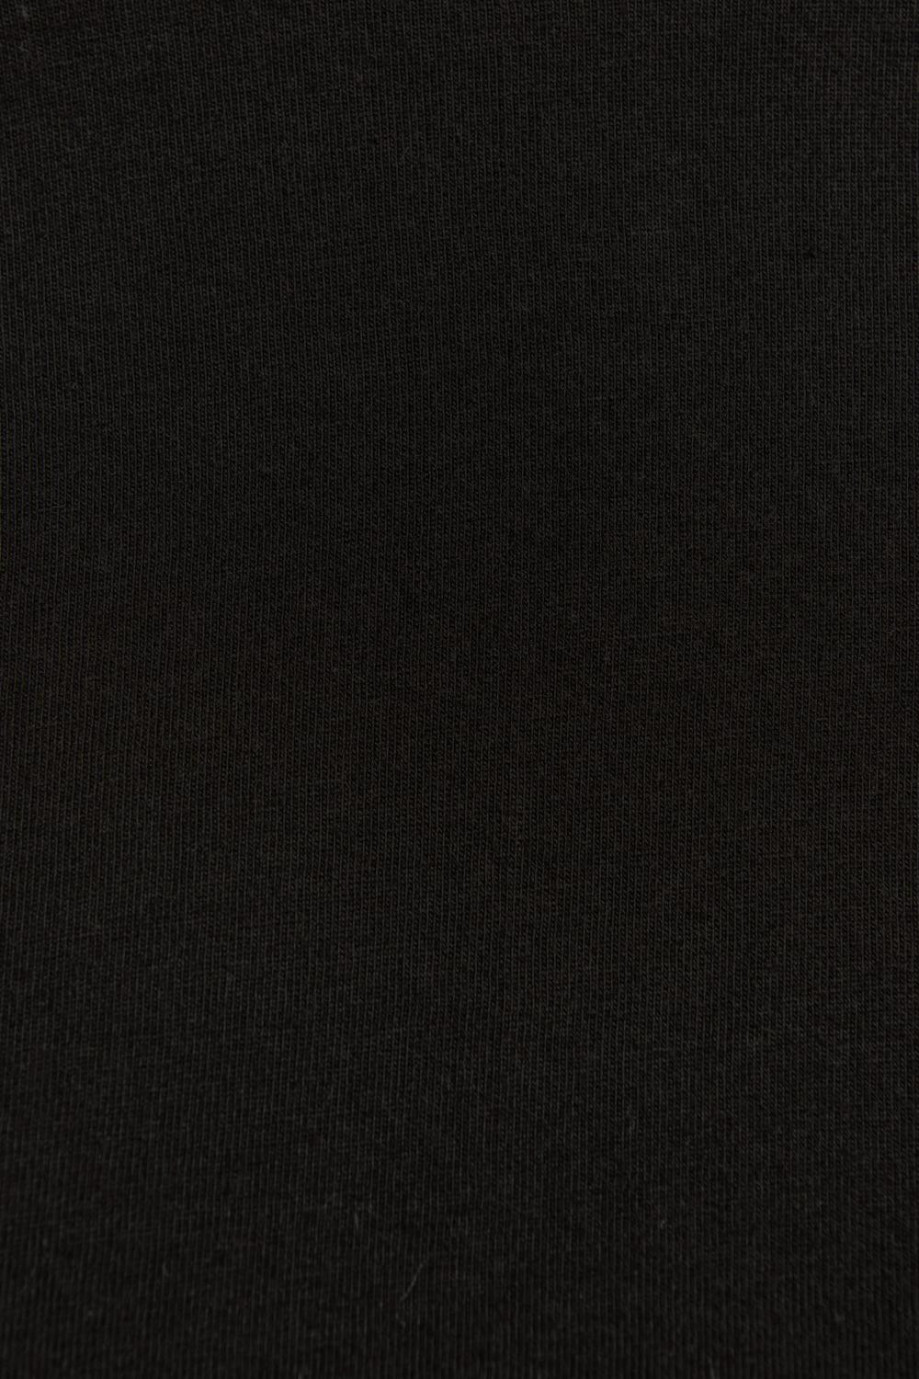 Camiseta crop top unicolor con cuello redondo y manga corta